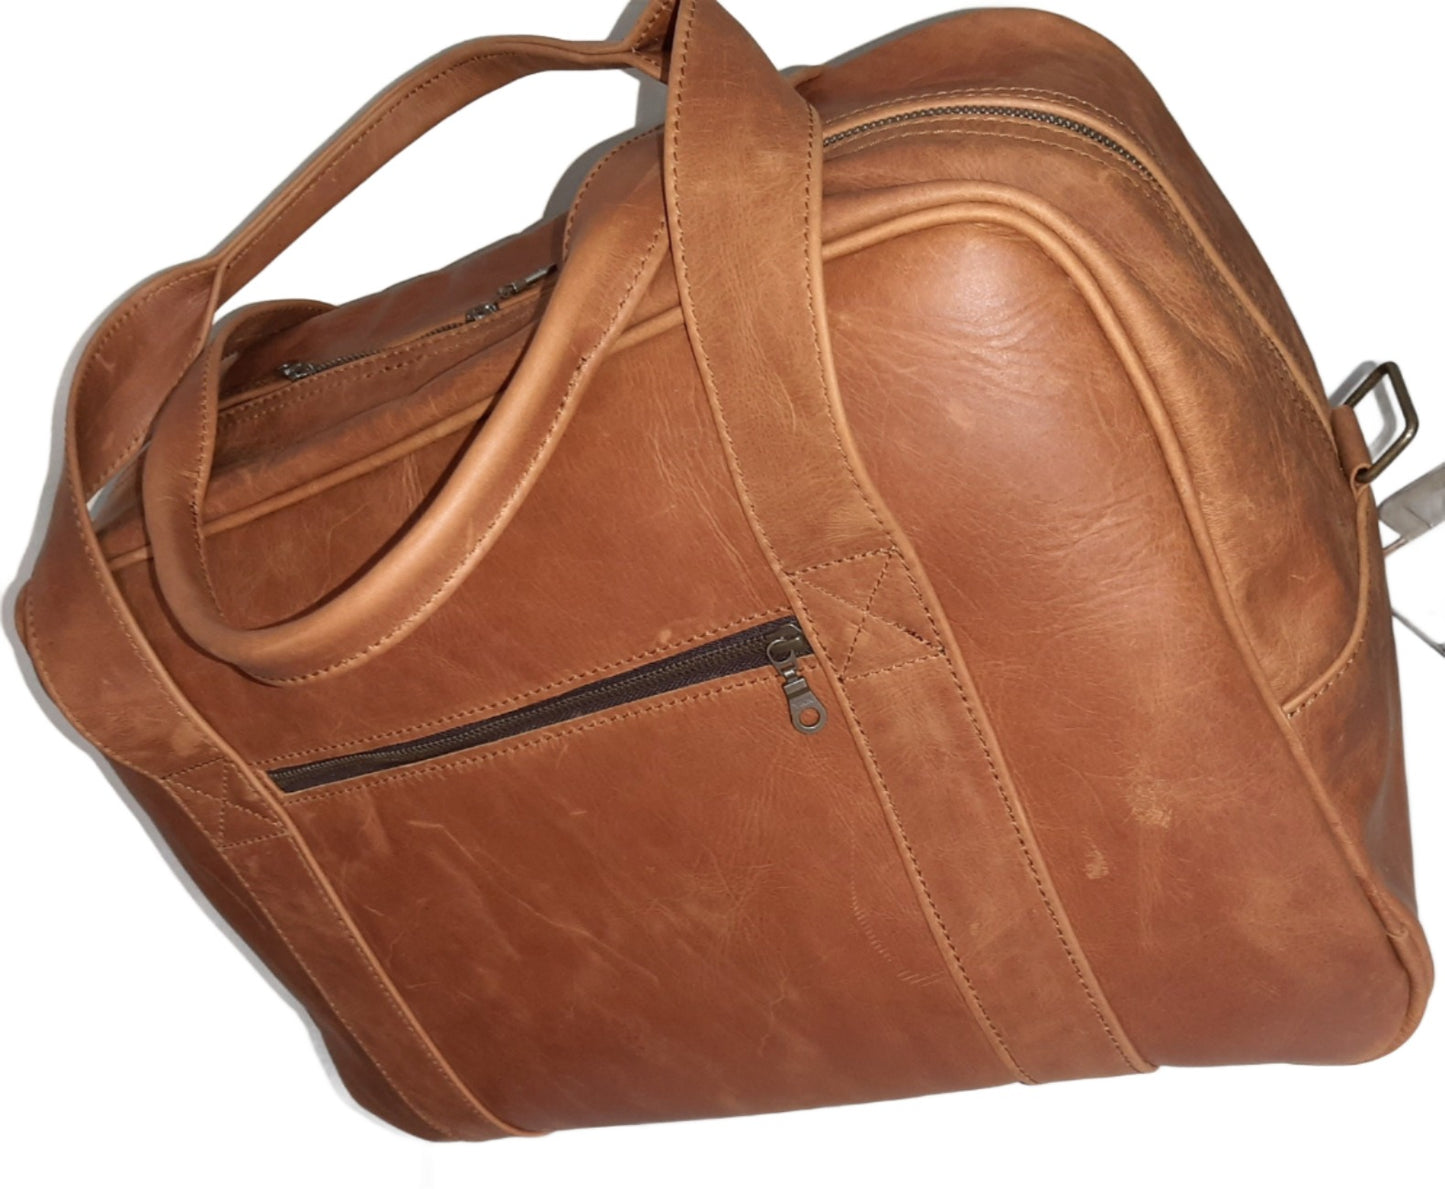 Cape Executive Traveler Bag - Cape Masai Leather 